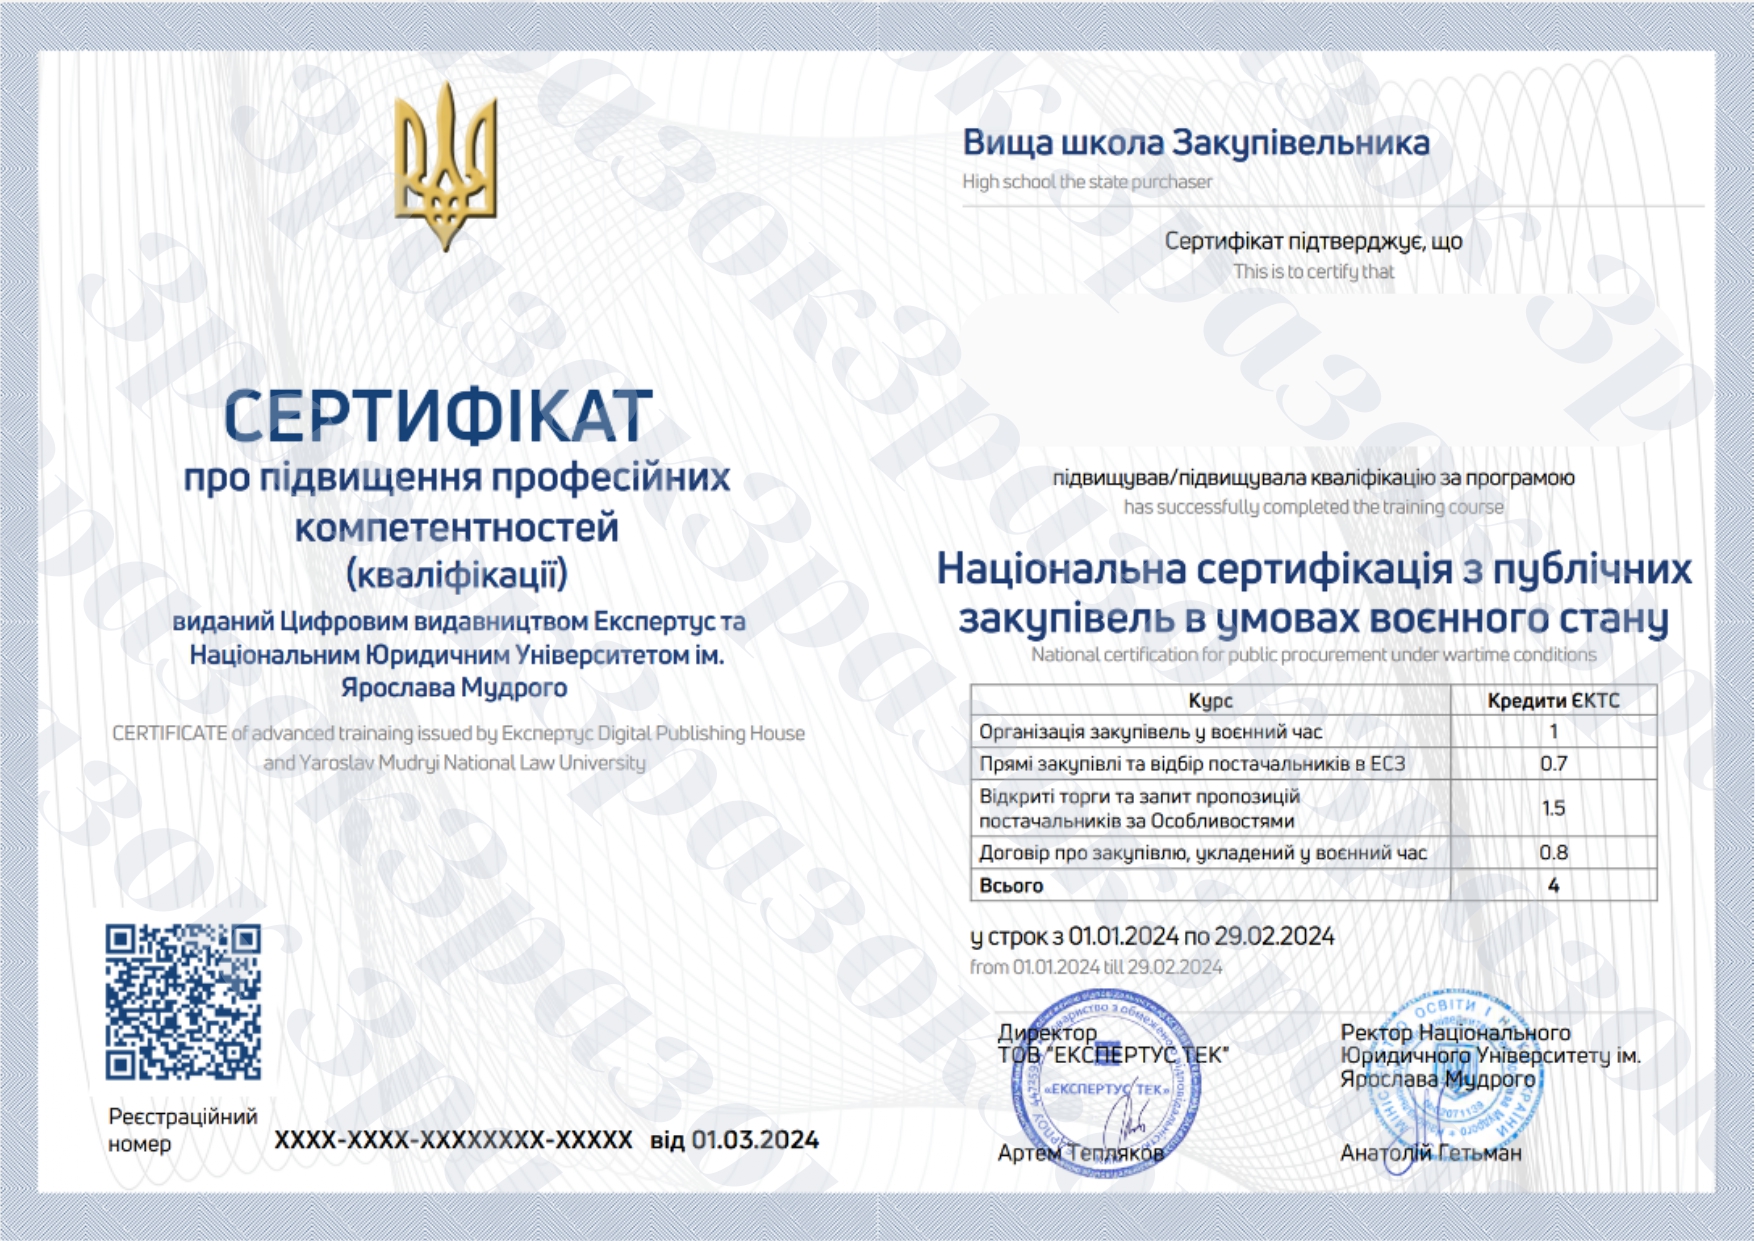 Національна сертифікація з публічних закупівель в умовах воєнного стану